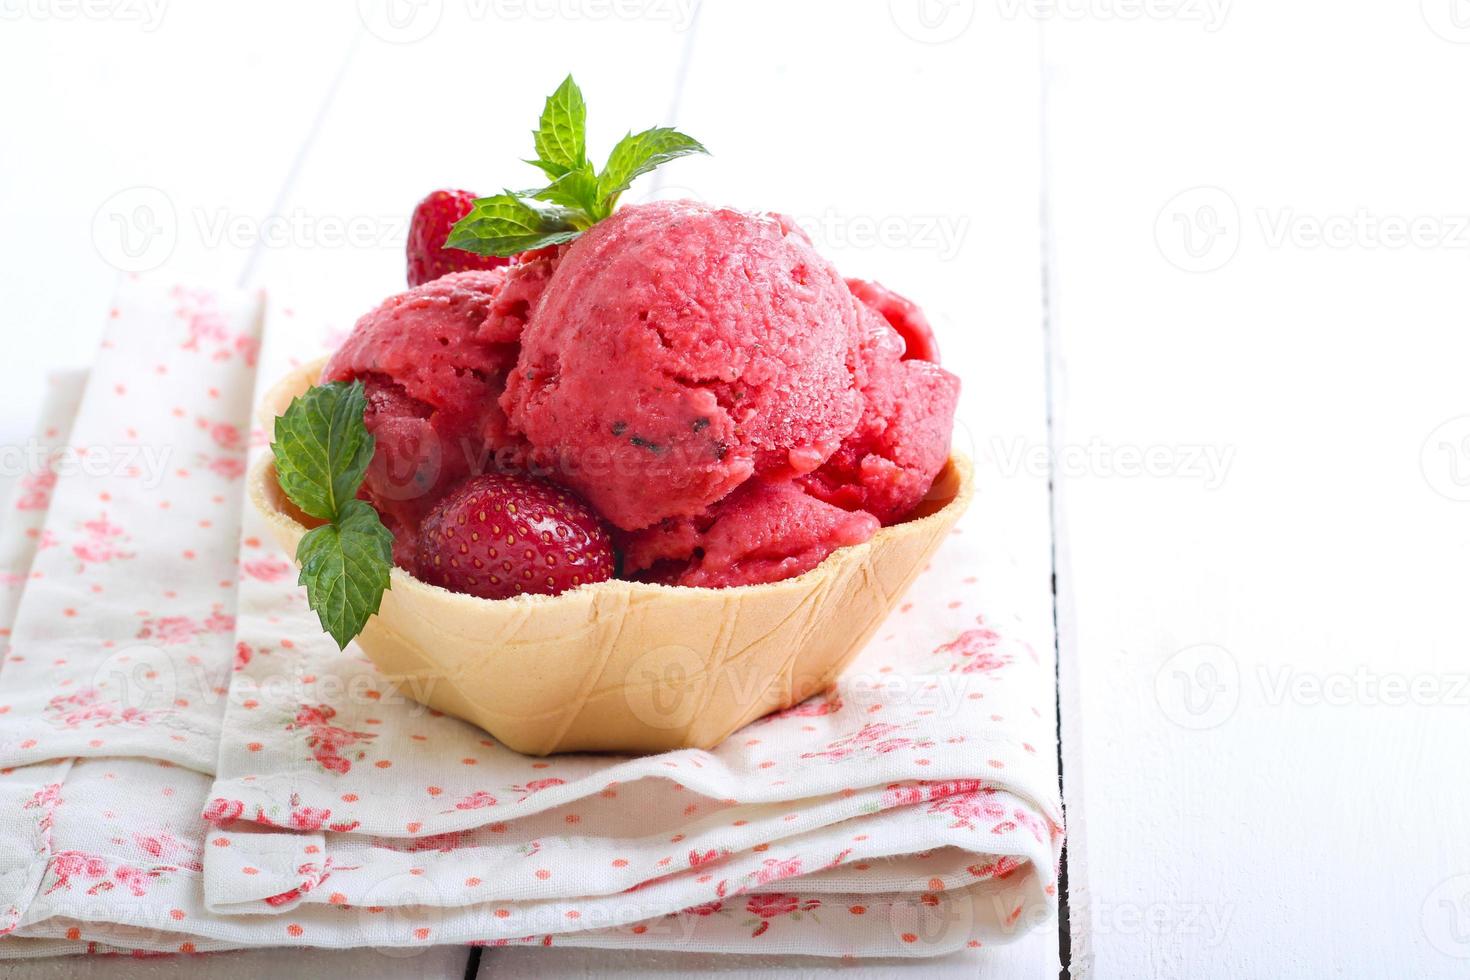 sorvete de morango e menta, foto